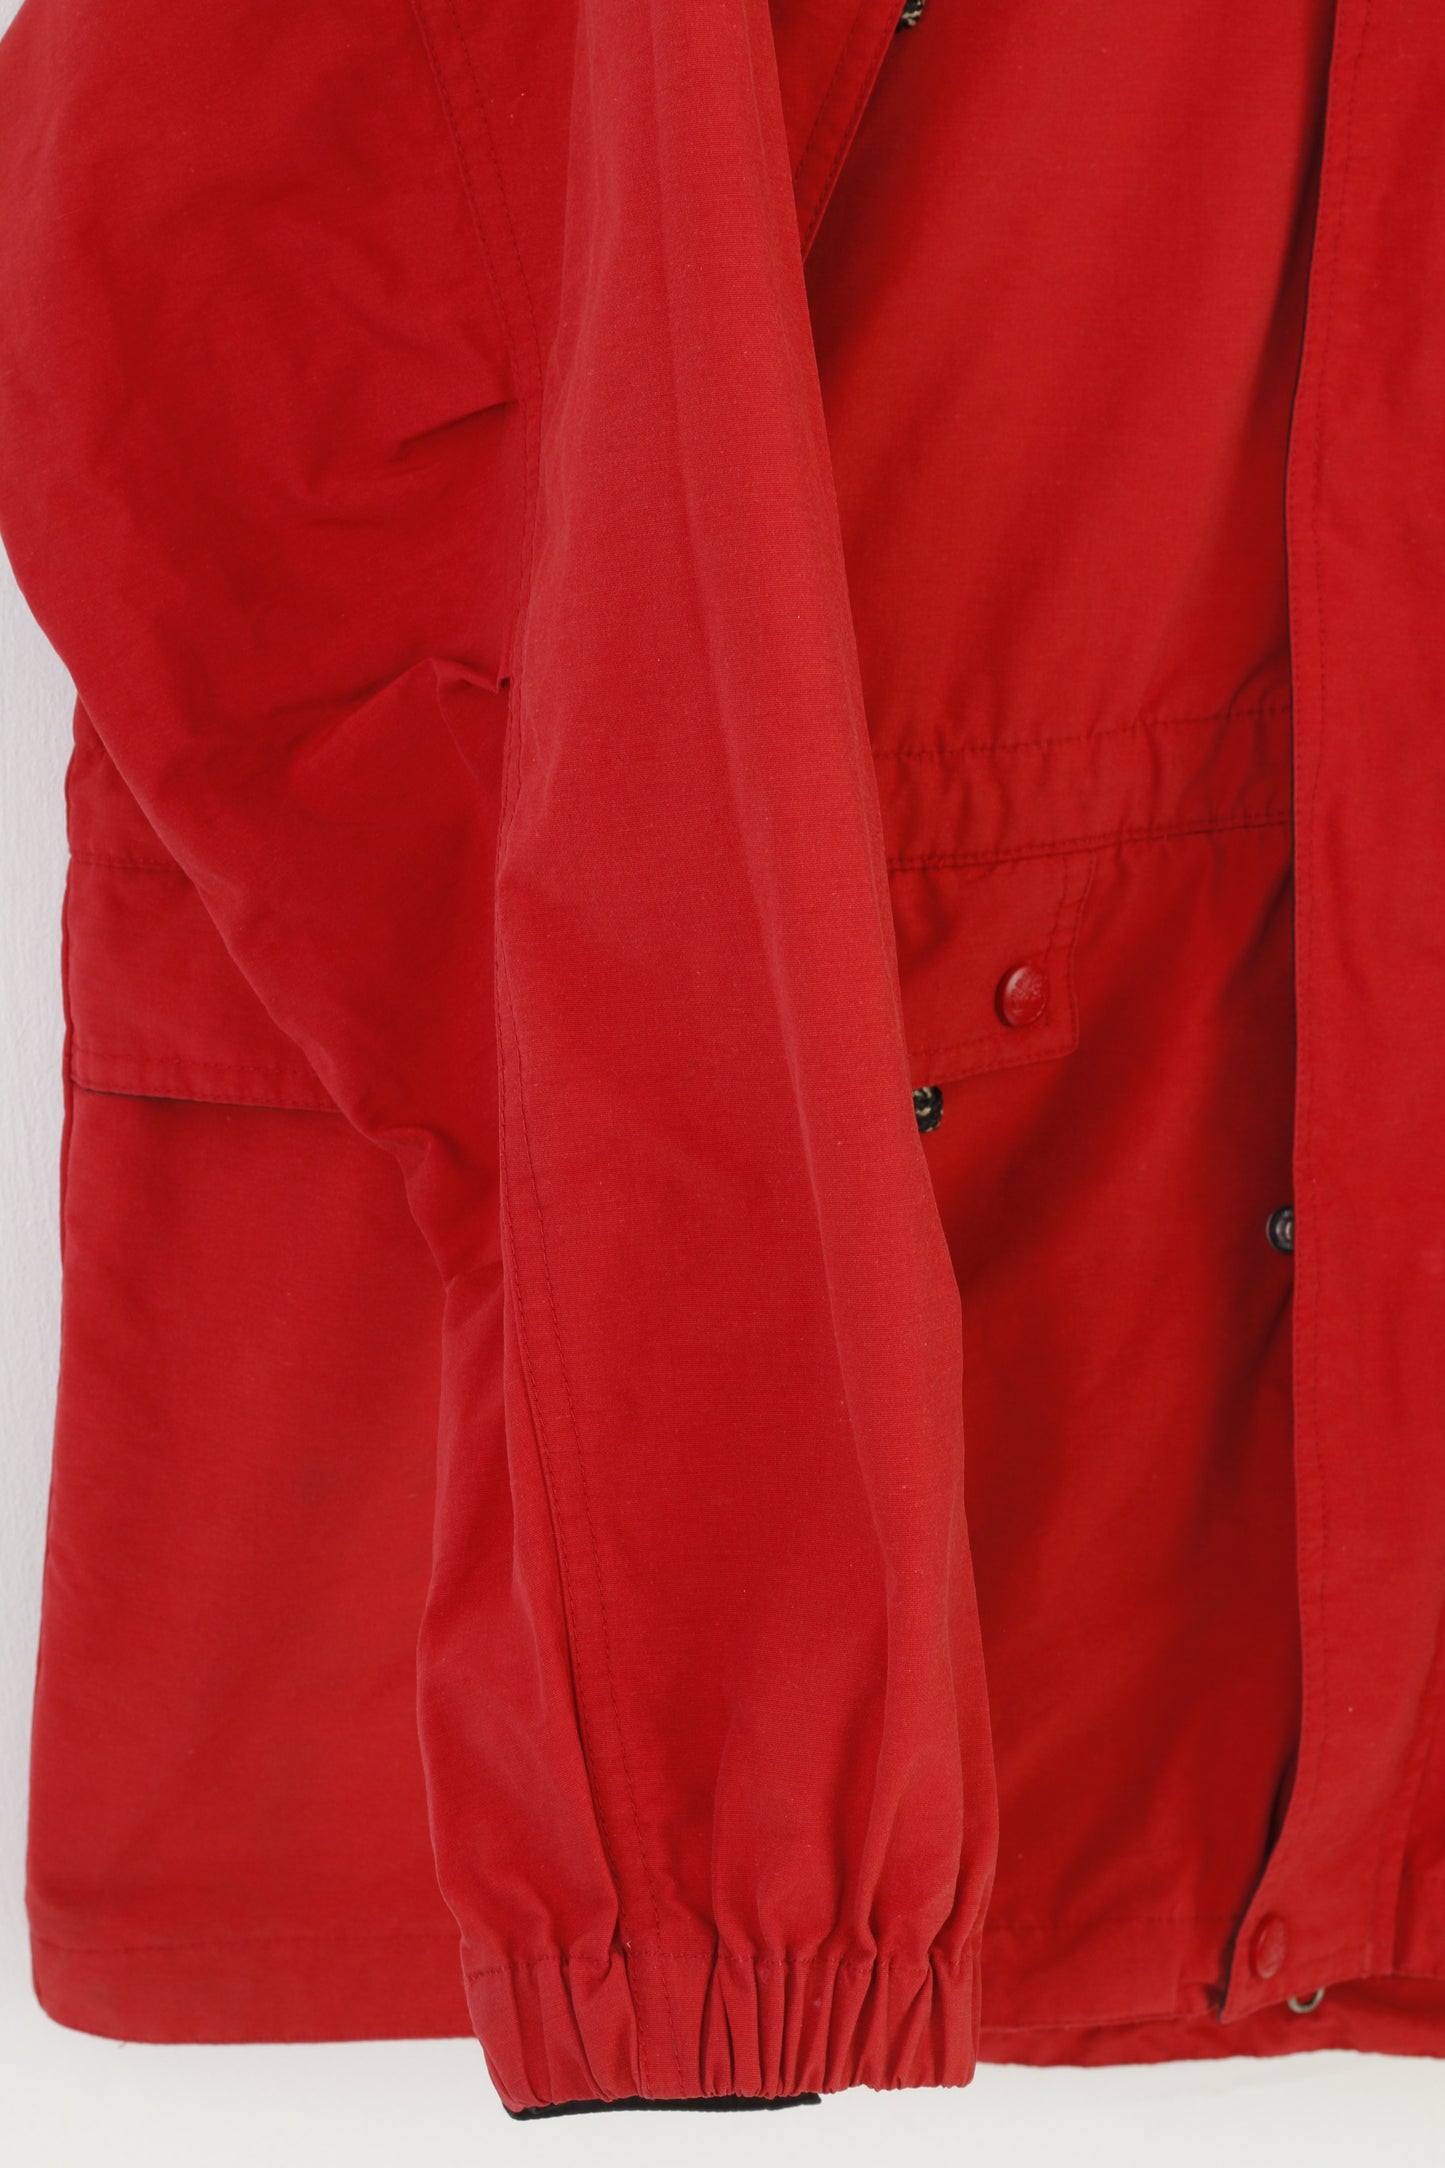 Timberland Hommes L Veste Rouge Fermeture Éclair Complète Vintage Capuche Outwear Coton Nylon Poches Top